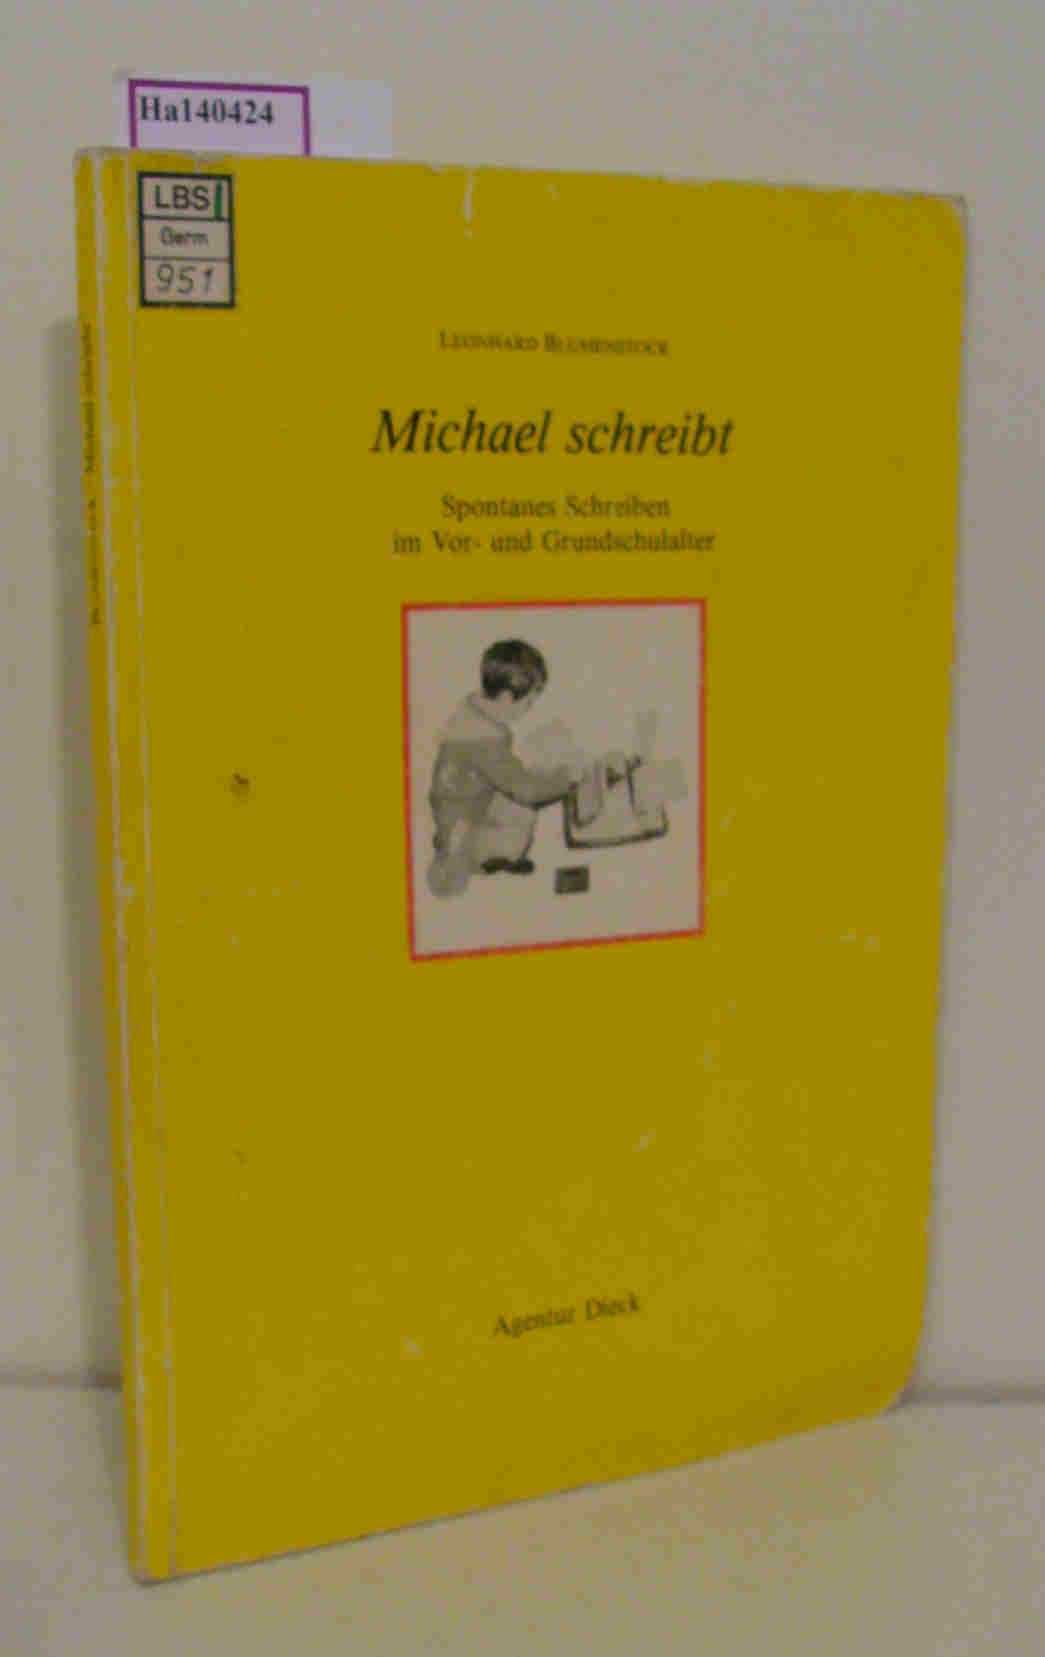 Michael schreibt. Spontanes Schreiben im Vor- und Grundschulalter. - Blumenstock, Leonhard